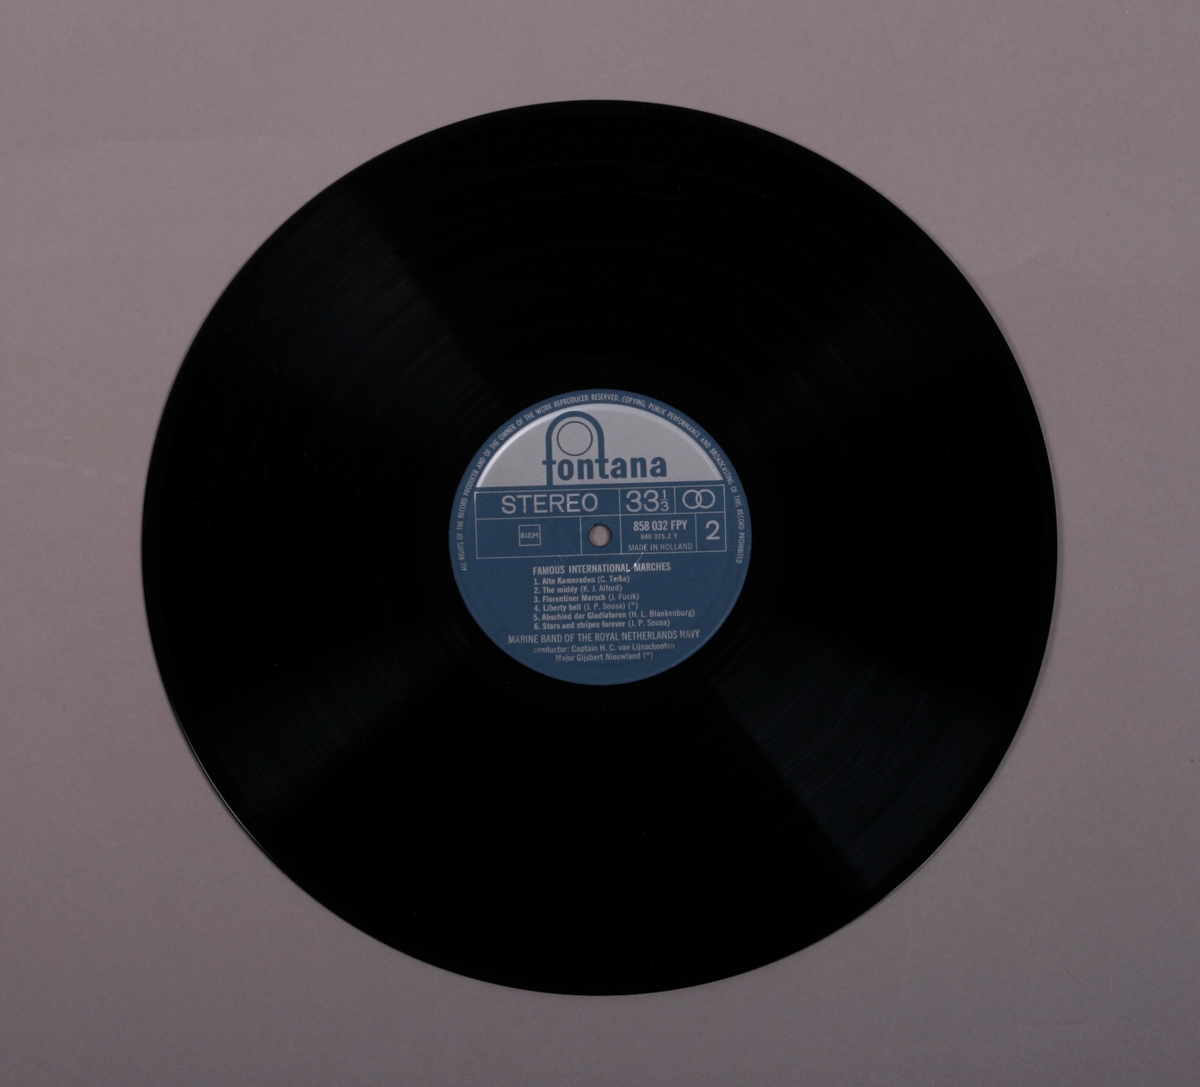 Grammofonplate i svart vinyl og plateomslag i papp. Plata ligger i en papirlomme